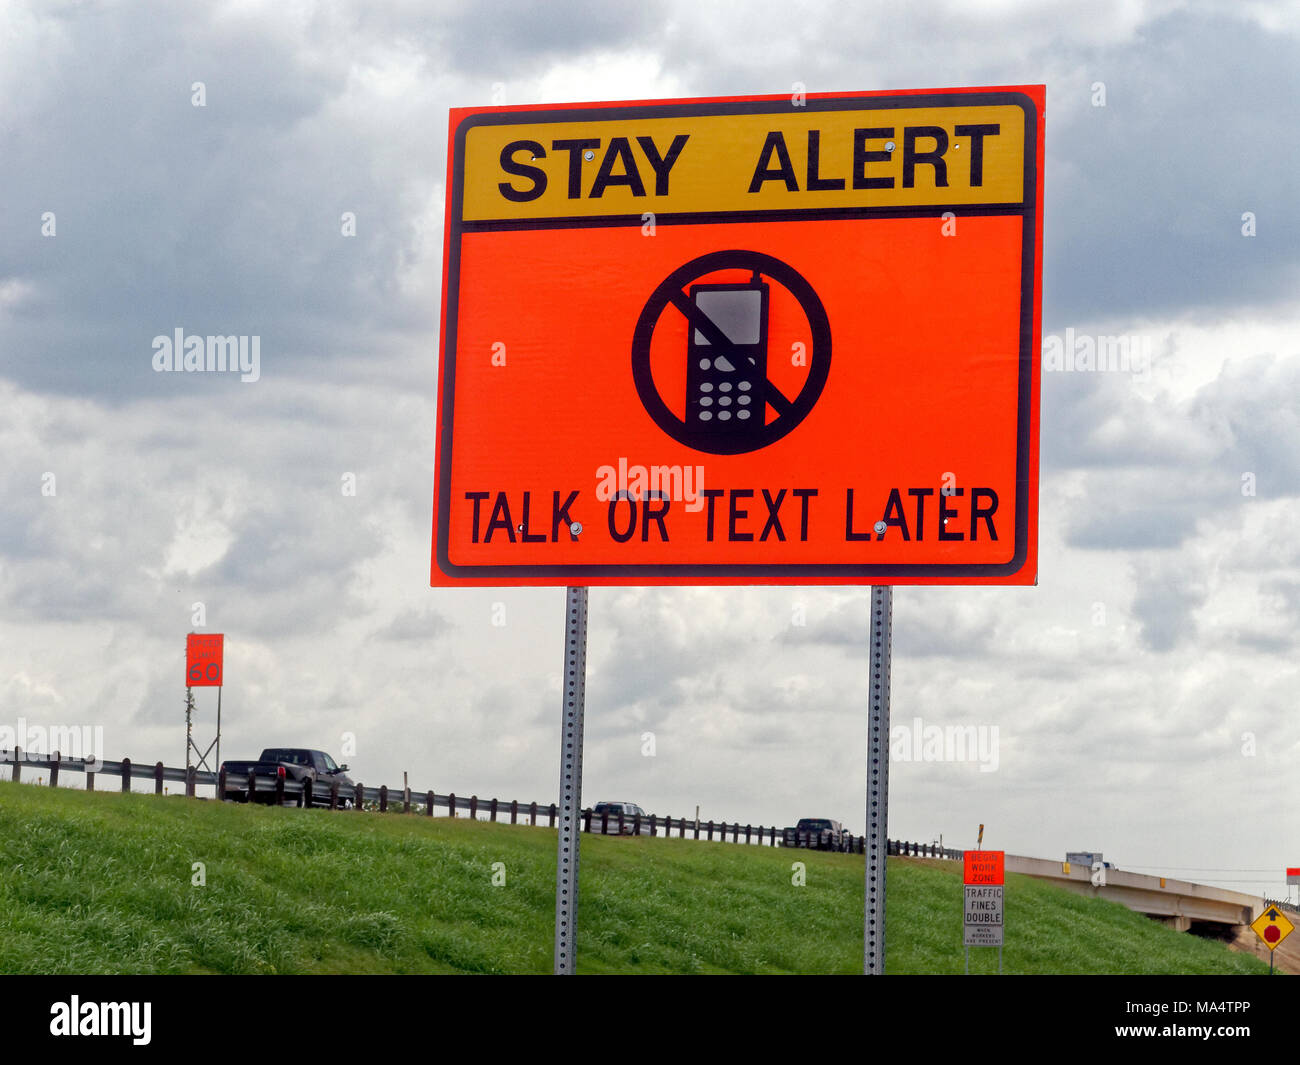 Entlang der Autobahn ein Schild warnt Fahrer aufmerksam zu bleiben und nicht Ihr Smartphone und Handy zu verwenden, während der Fahrt. Sms hat eine Hauptursache der Unfälle auf der heutigen Straßen werden, ob auf den Straßen der Stadt oder auf der Autobahn. Stockfoto